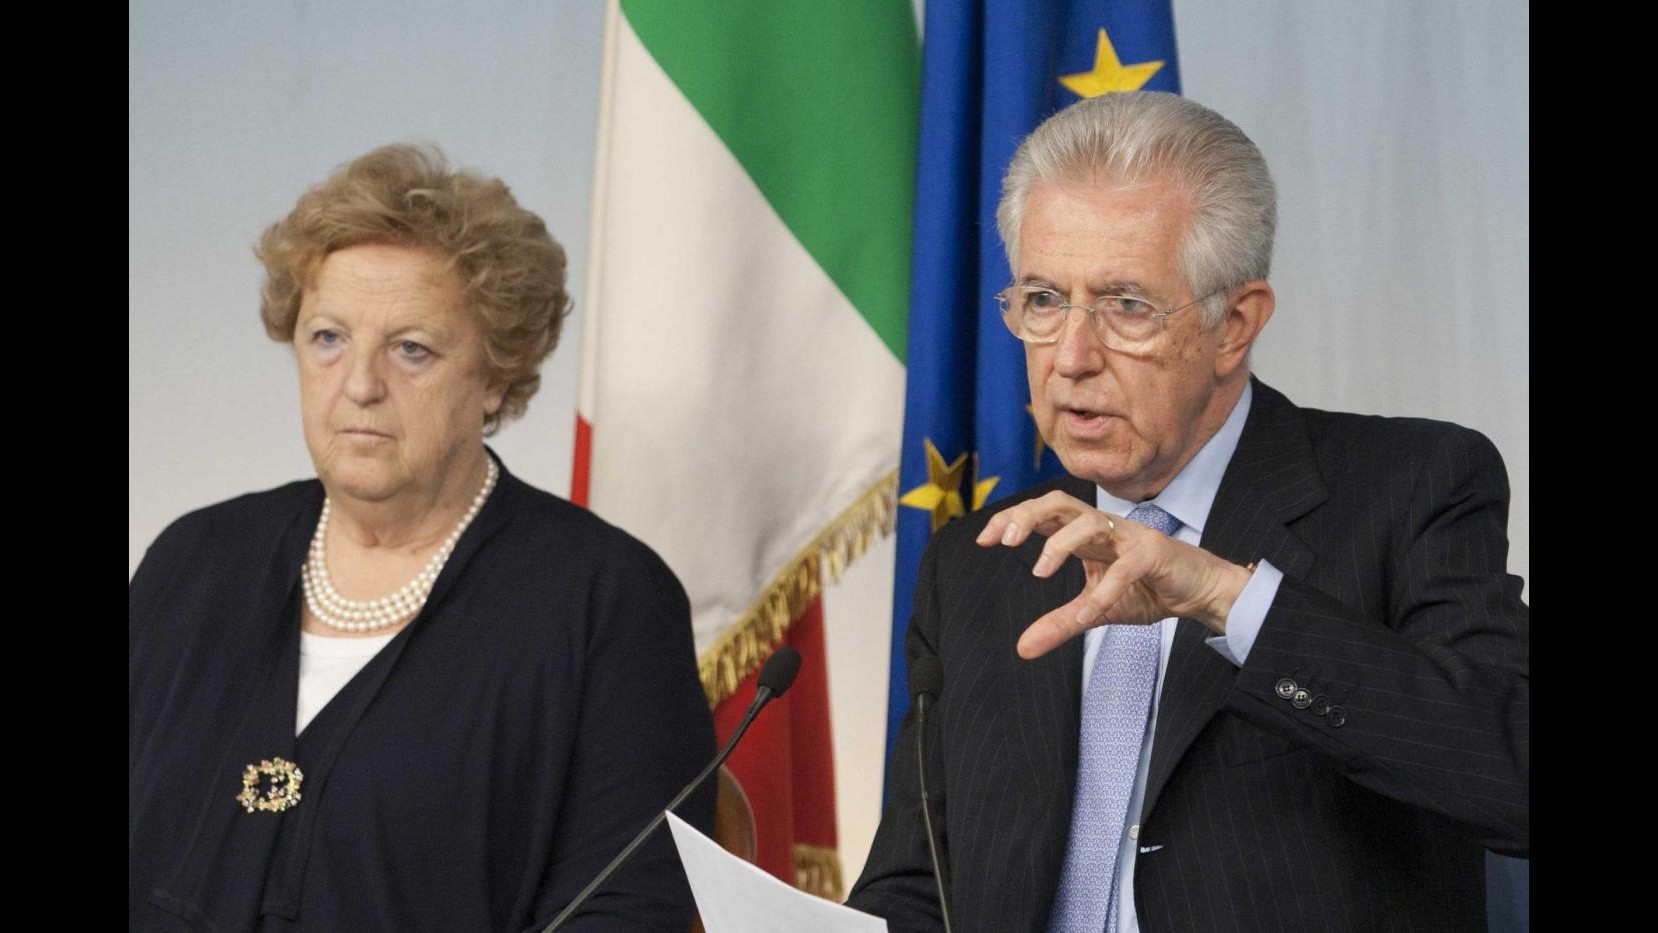 Quirinale, Monti annuncia candidatura Cancellieri: non è contro Prodi